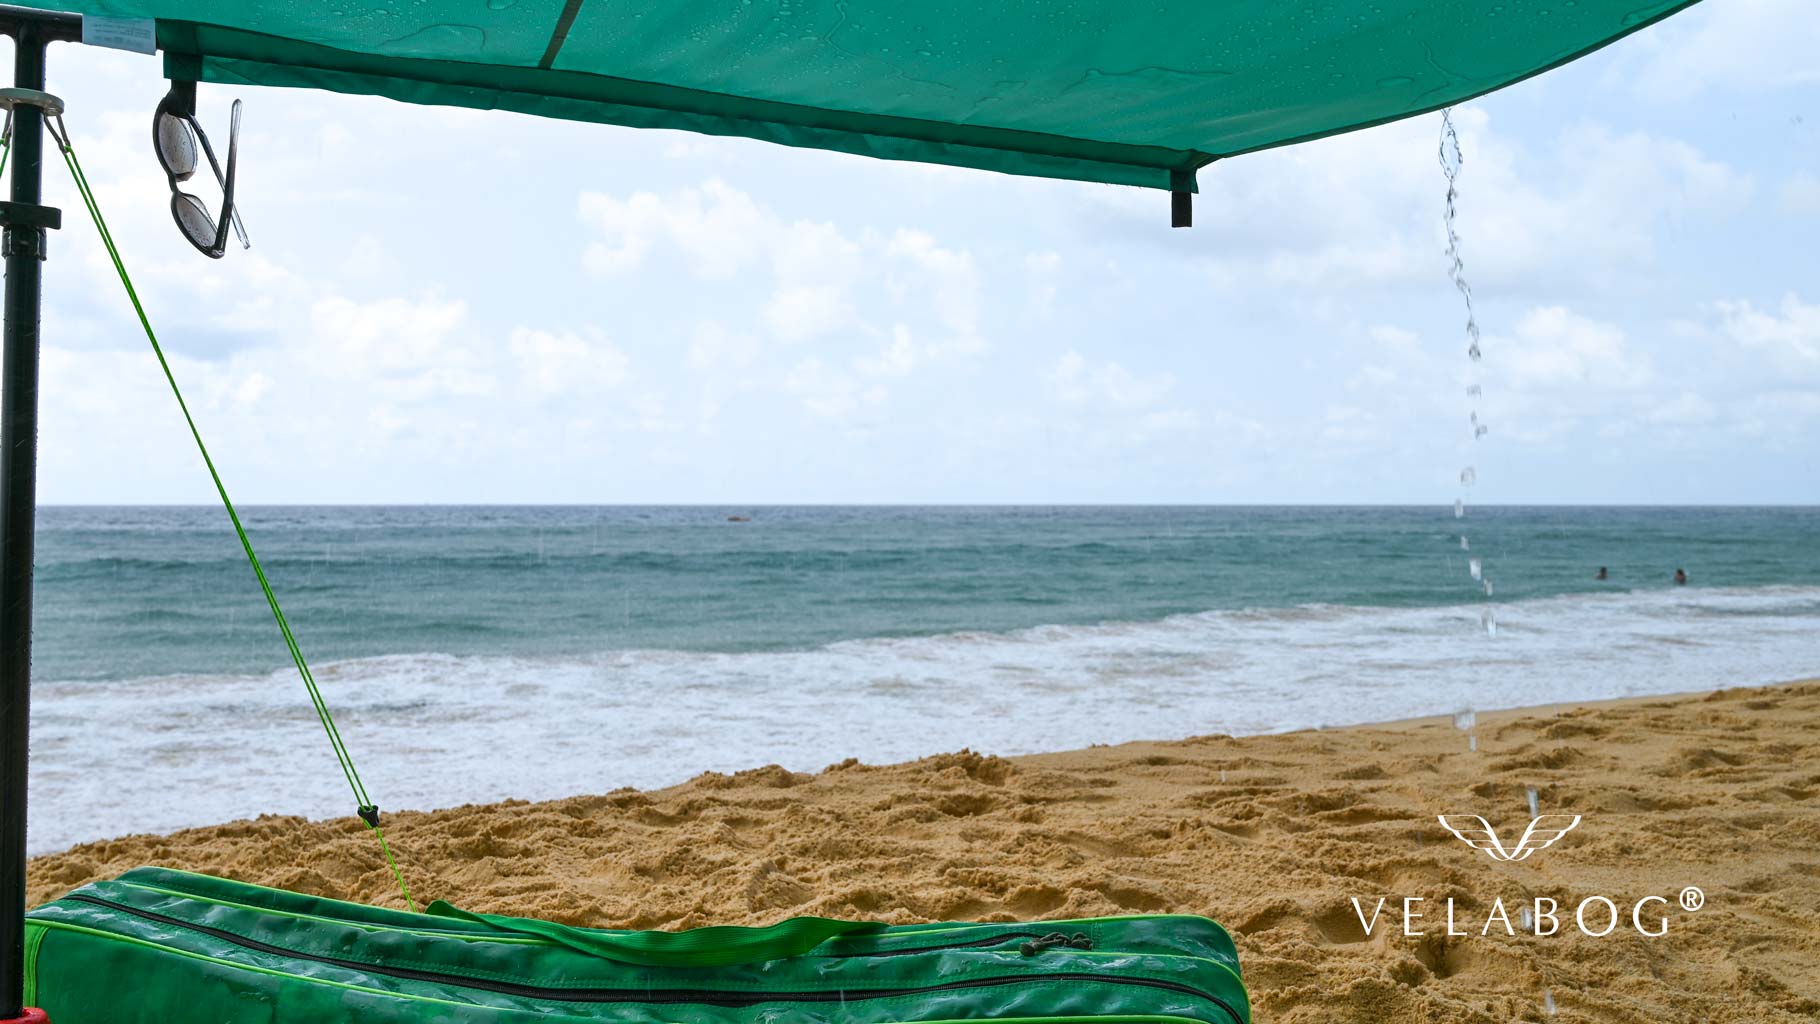 El toldo playa Velabog Breeze en la playa también protege de un chubasco corto. Toldo playa, sombrilla y refugio de playa en uno. De esta forma tiene todo lo que necesita para disfrutar realmente de la playa sin problemas.